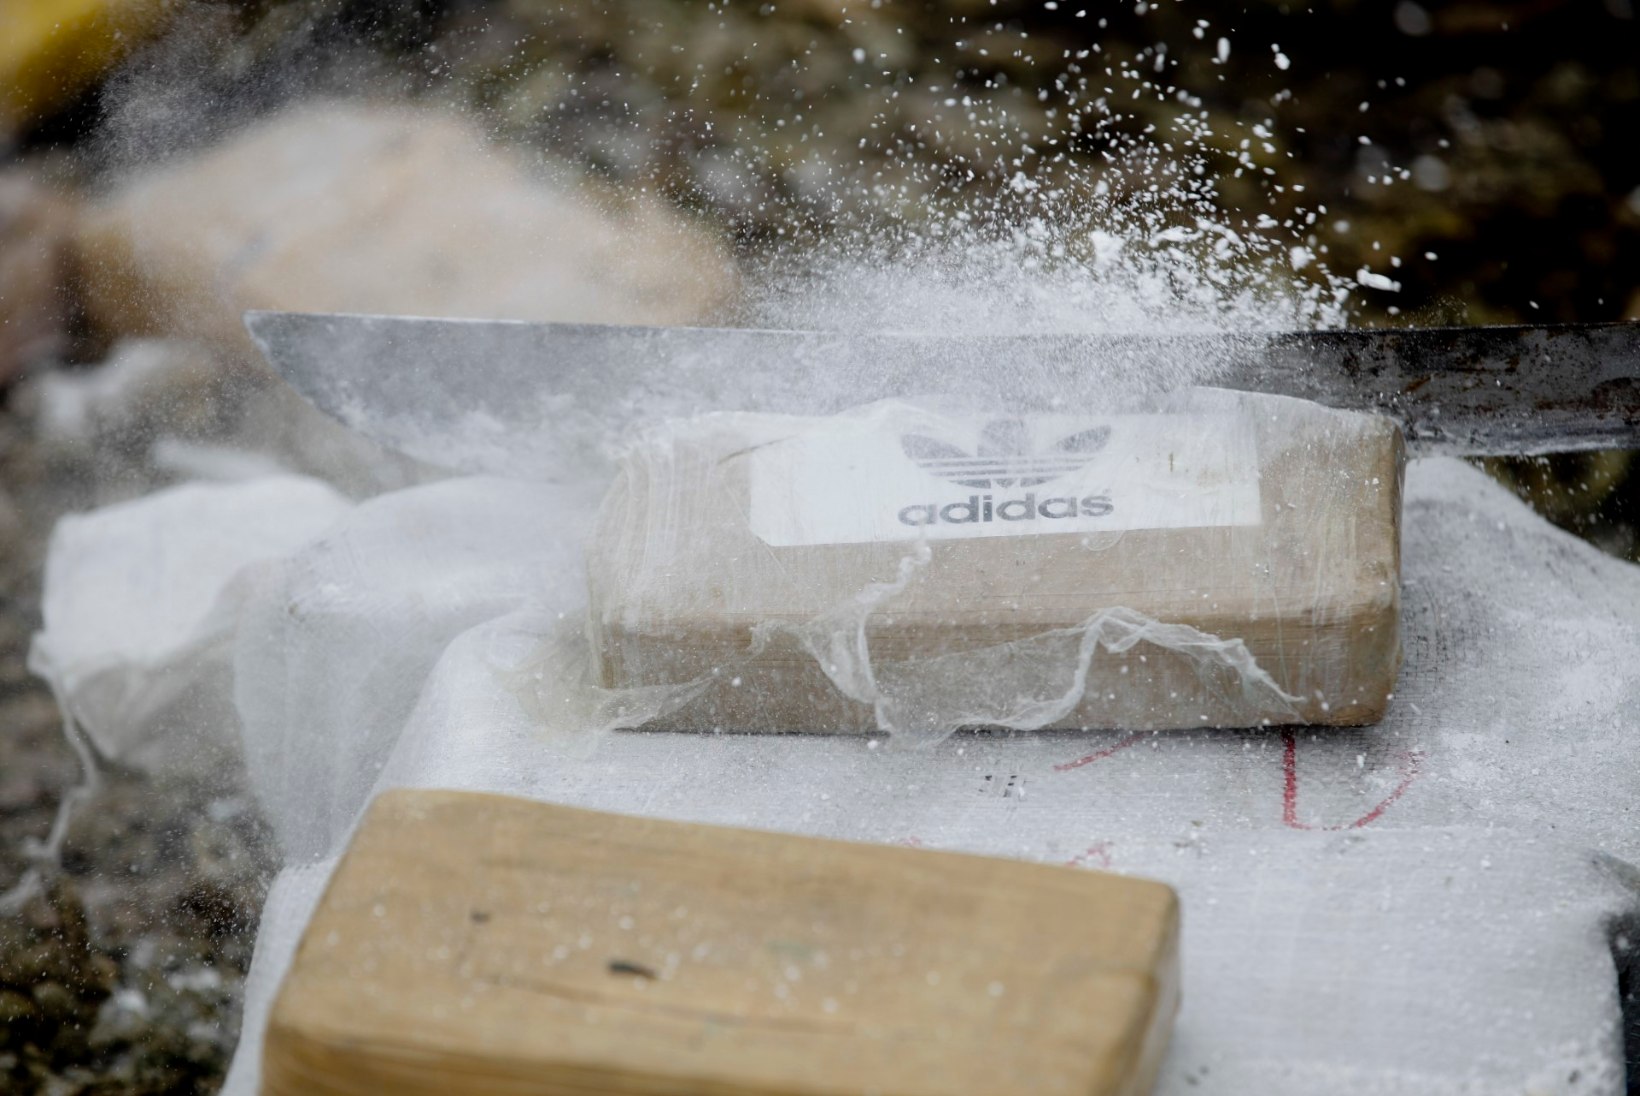 Soome hokiliigas puhkes kokaiiniskandaal